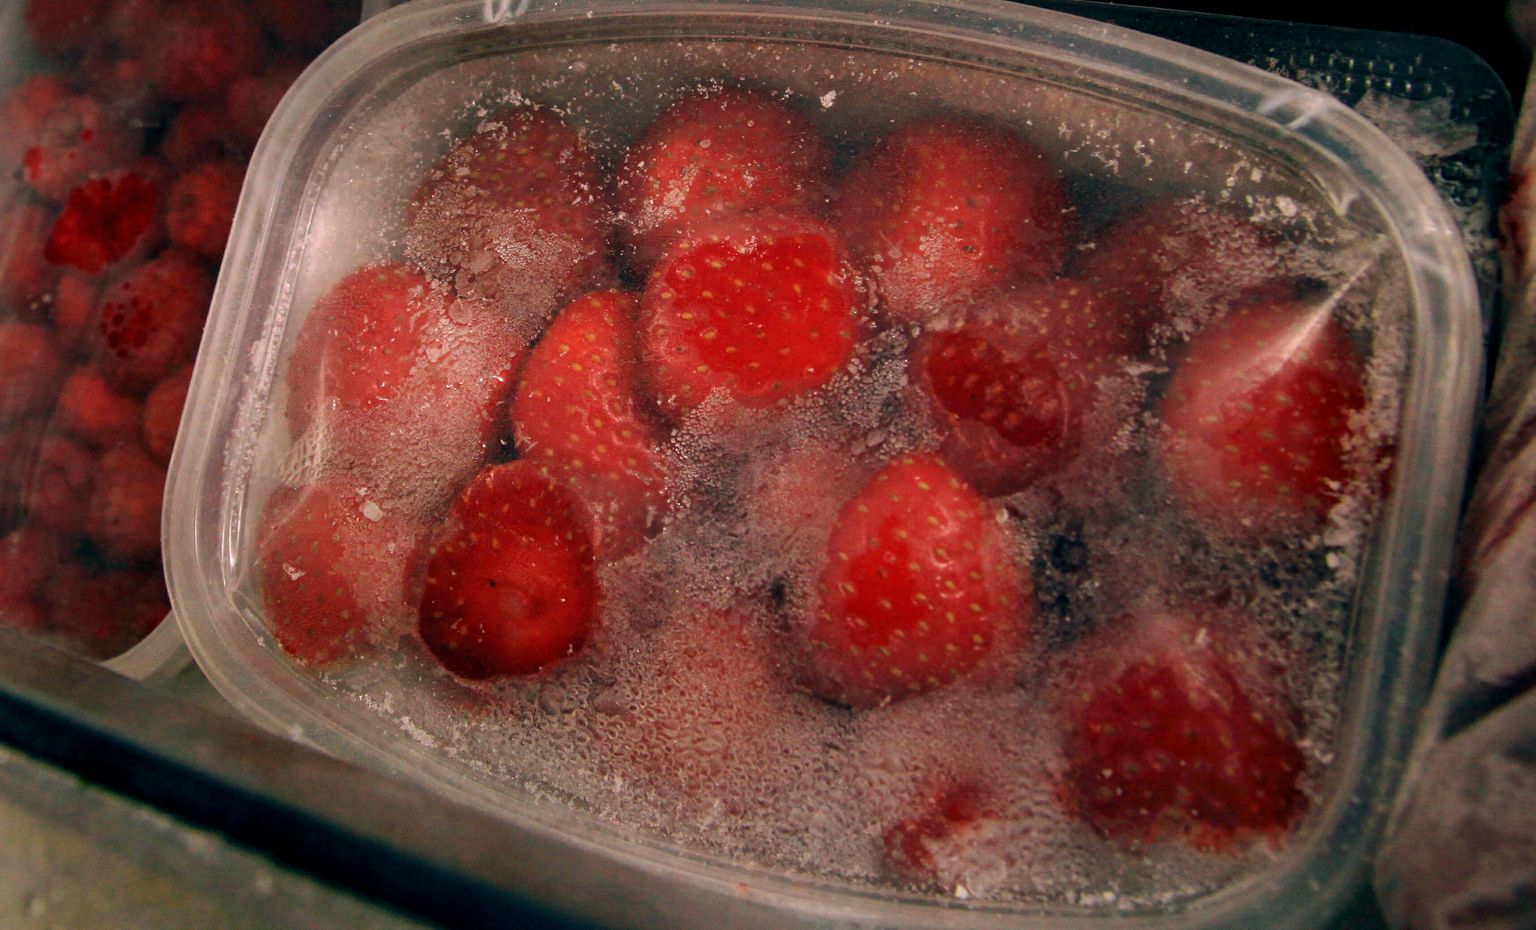 Sügavkülmutatud puuviljad on tavaliselt tervislikud, kuid näiteks soodsasse valmistoitu peaks suhtuma ettevaatusega.